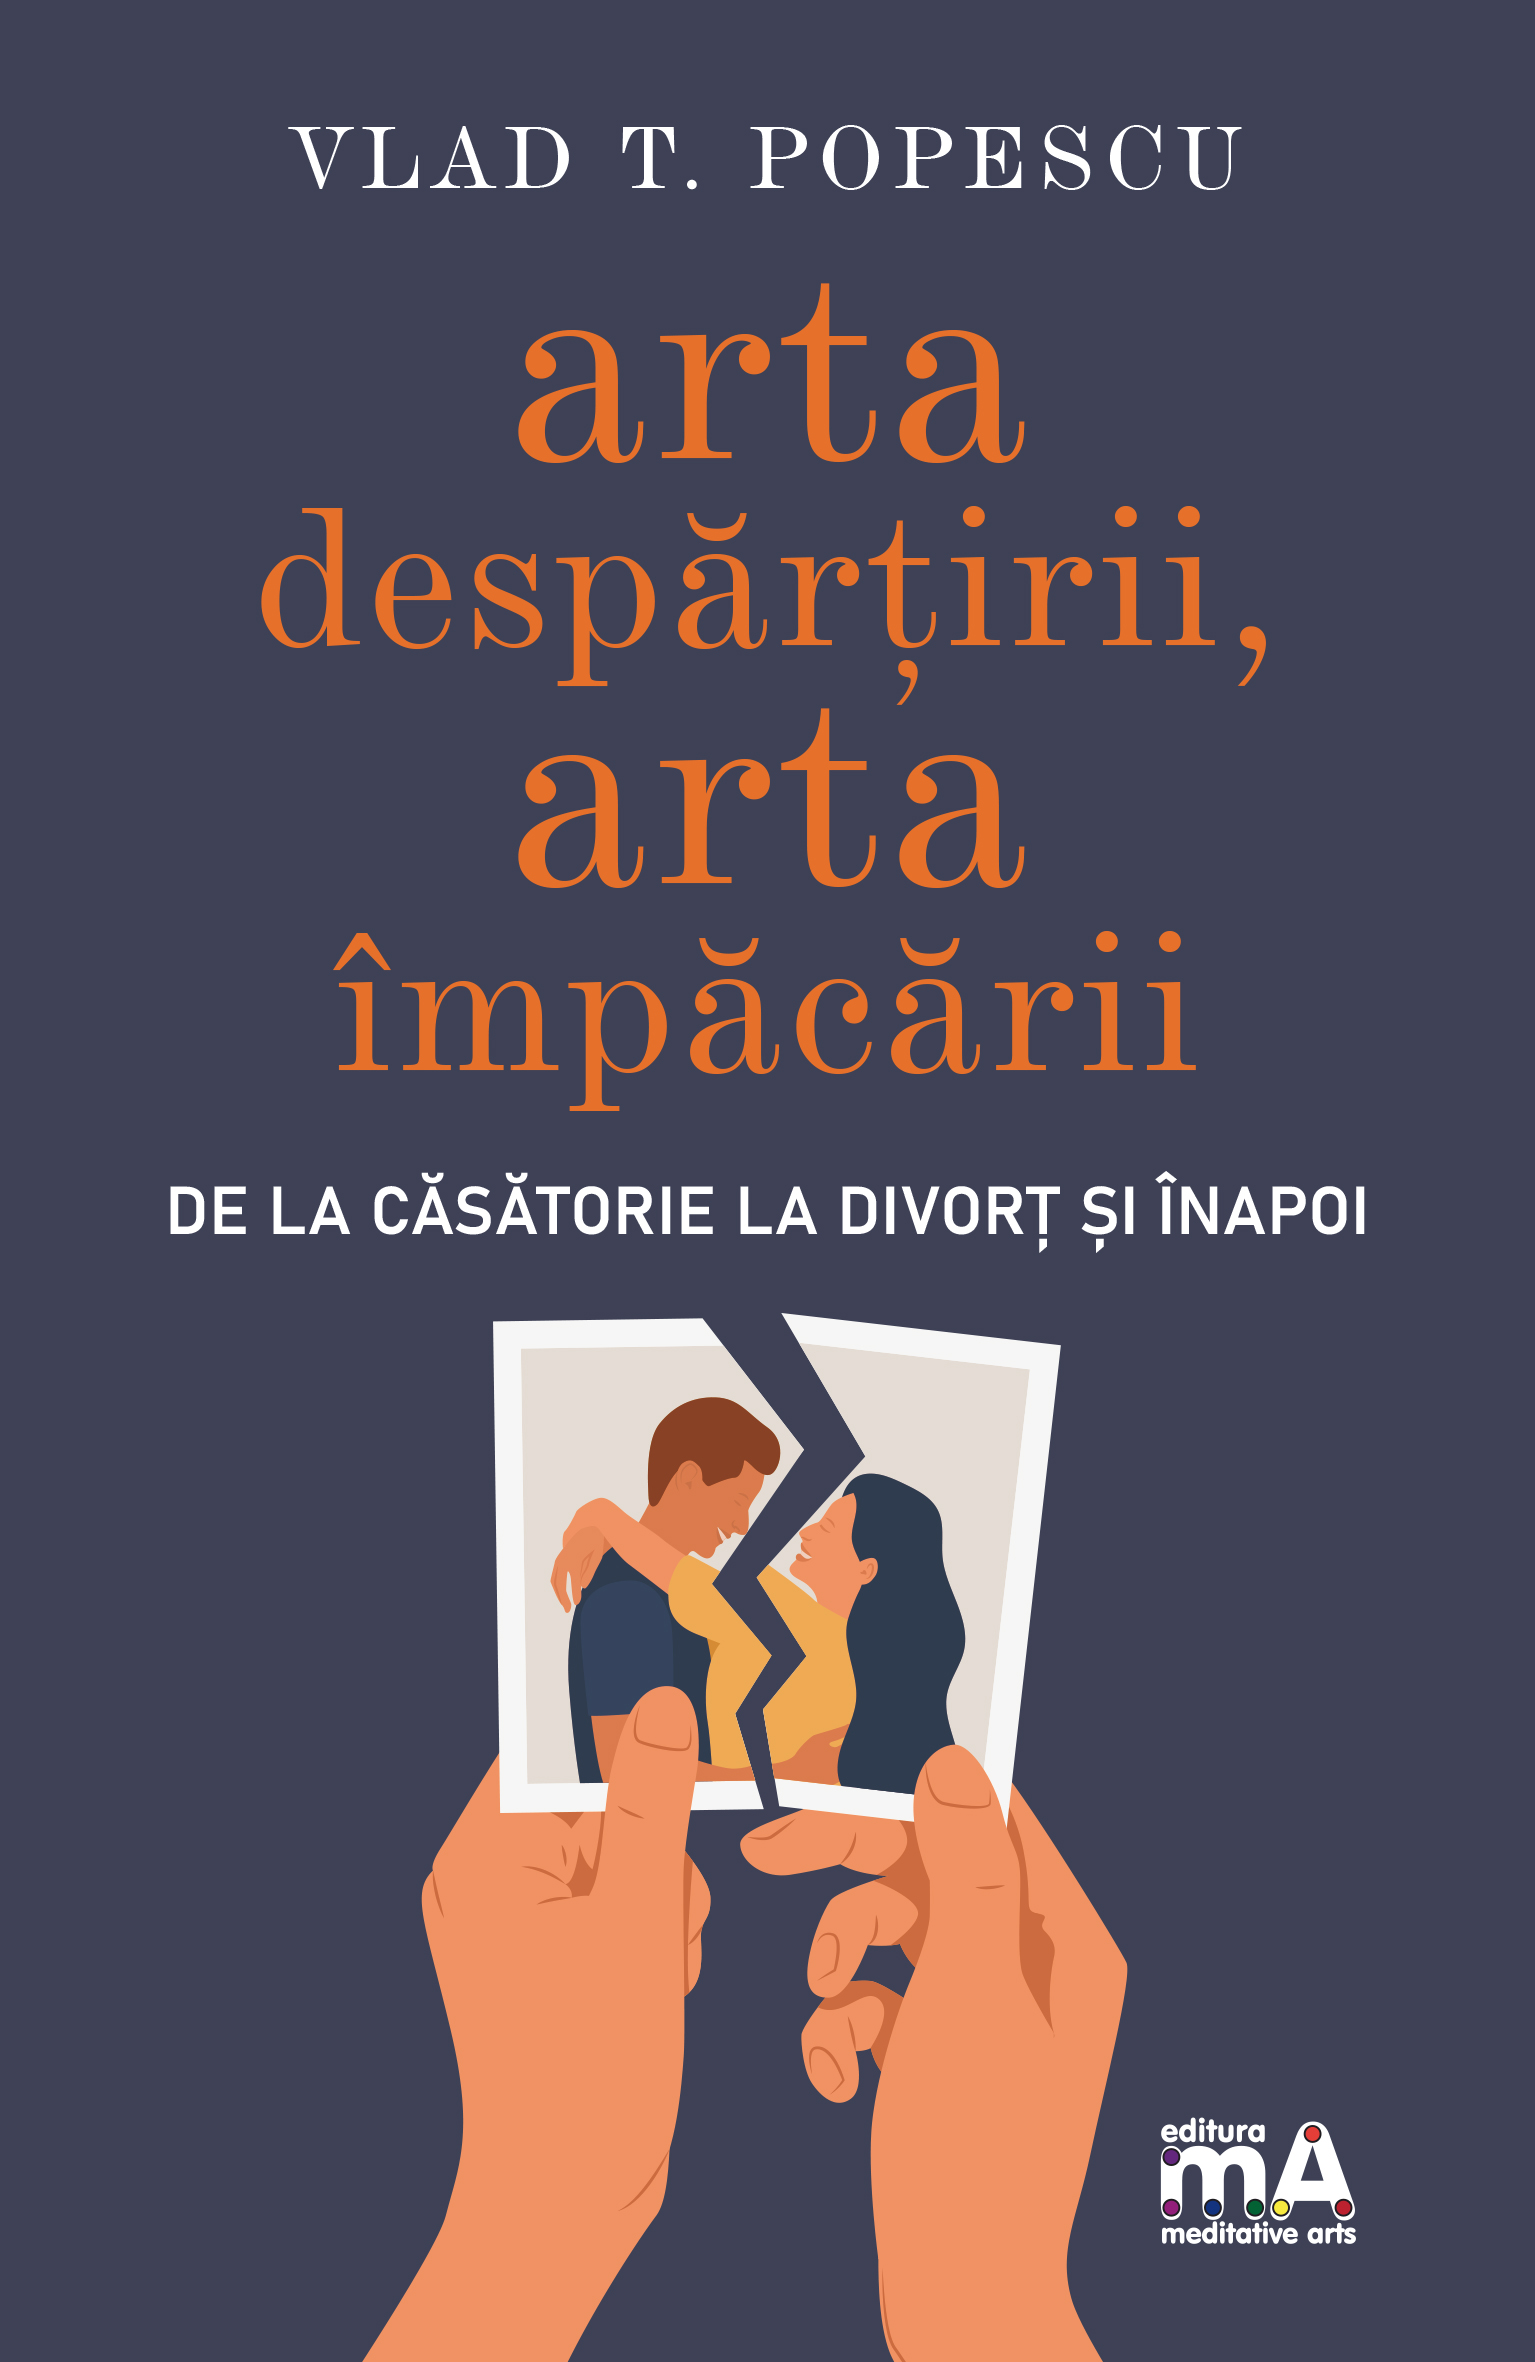 PDF Arta despartirii, arta impacarii | Vlad T.Popescu carturesti.ro Carte